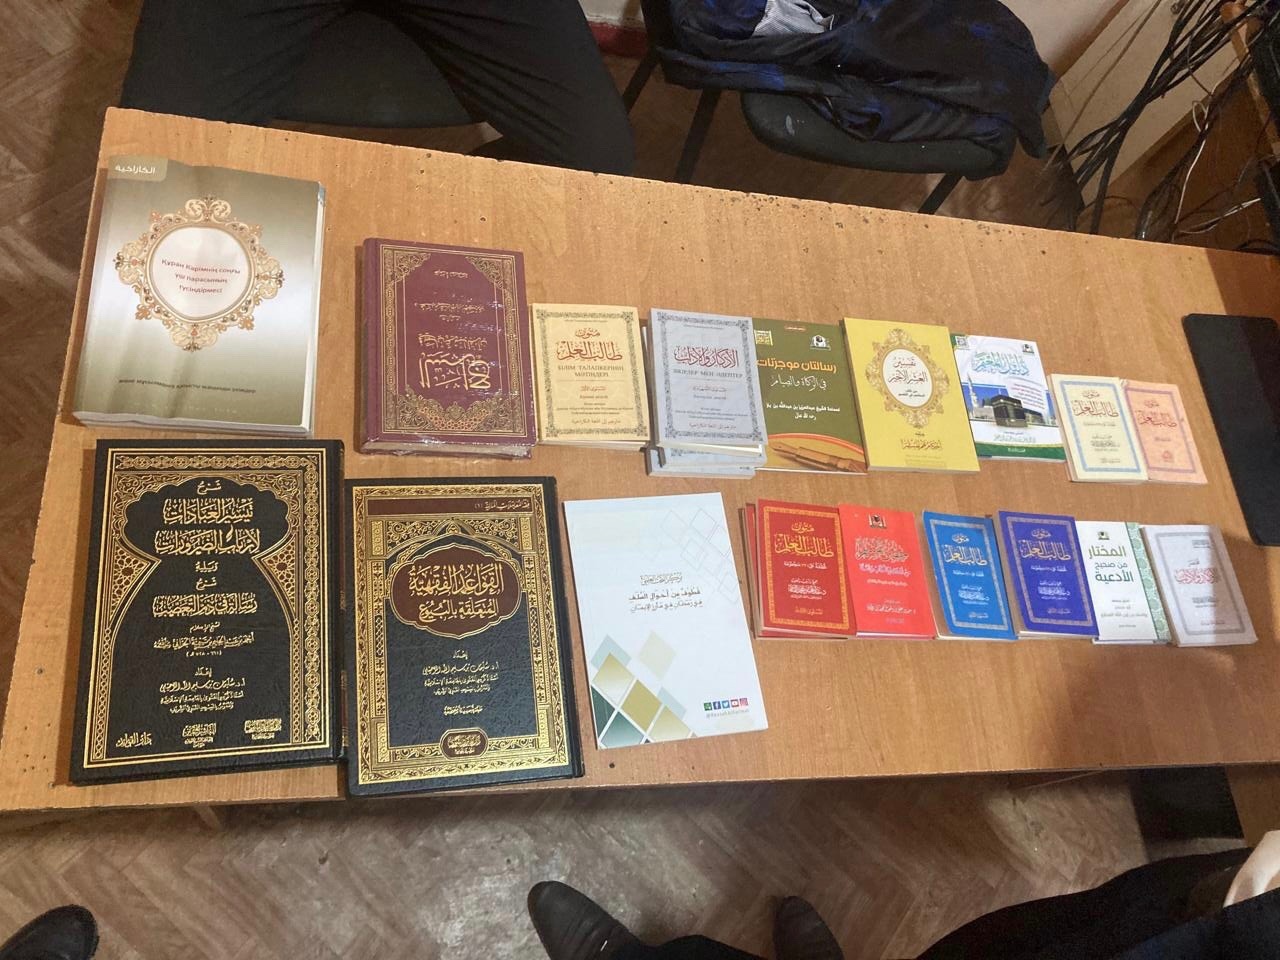 Халықаралық әуерейсінің 22 жастағы жолаушысына діни мазмұндағы кітаптардың 35 данасын заңсыз әкелгені үшін айыппұл салынды